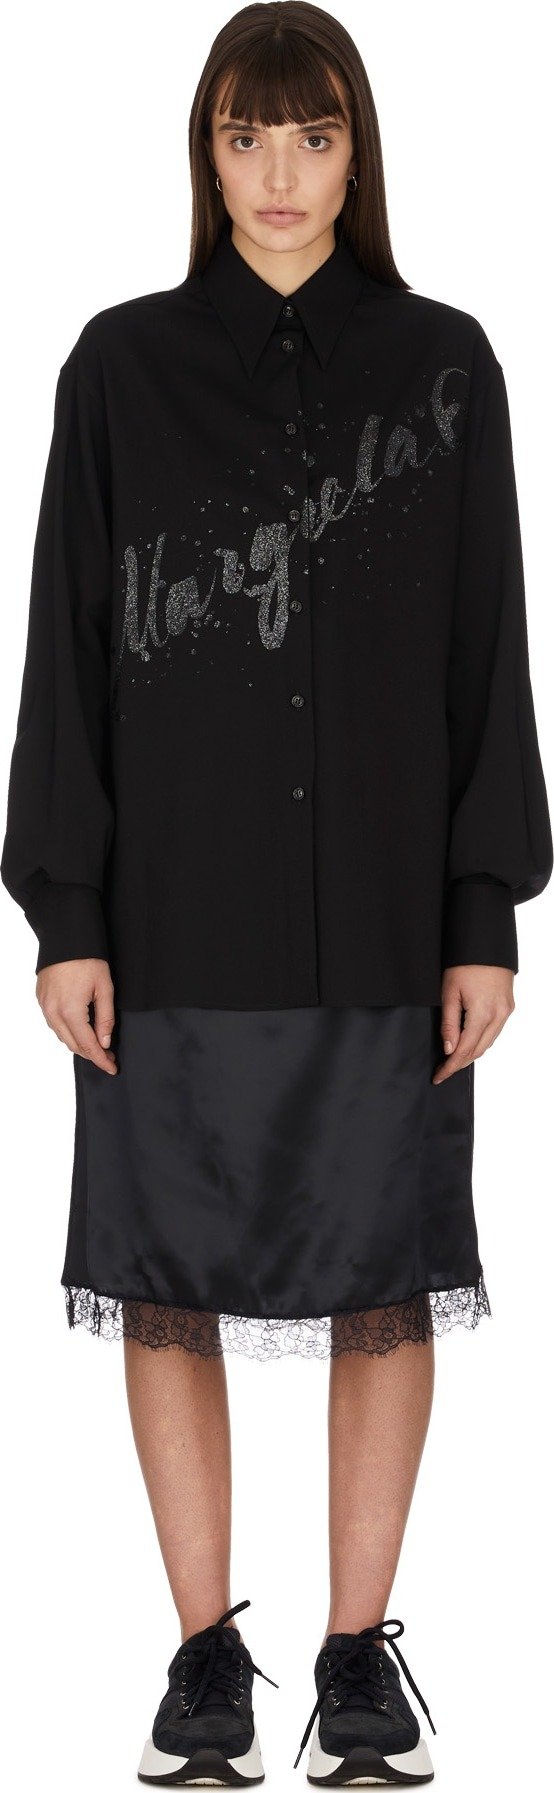 - Multi-Wear Spliced Glitter Logo Shirt Dress - Black